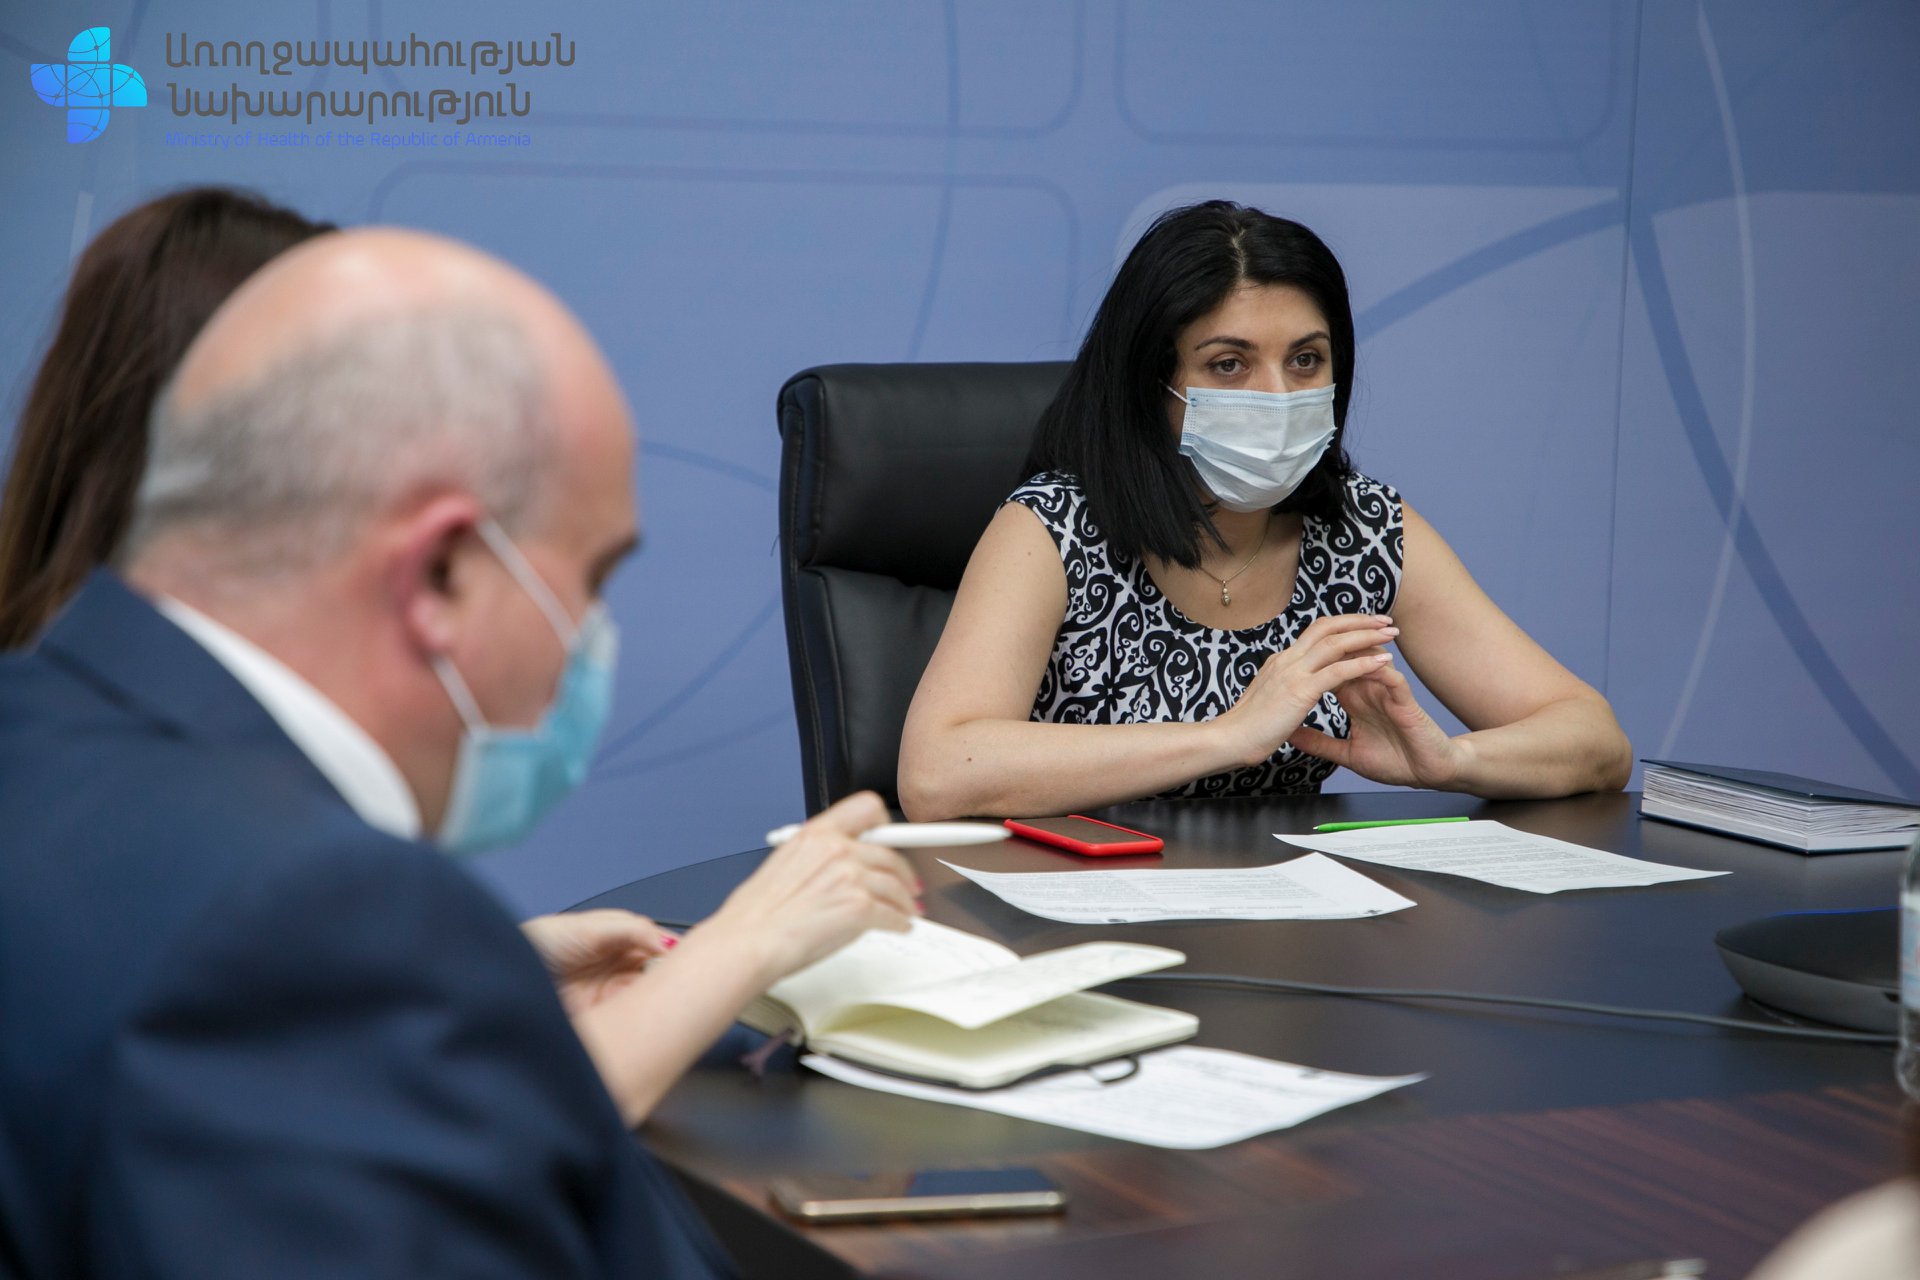 Քննարկվել են Հայաստանում տիրող կորոնավիրուսային համաճարակային իրավիճակին վերաբերող հարցեր